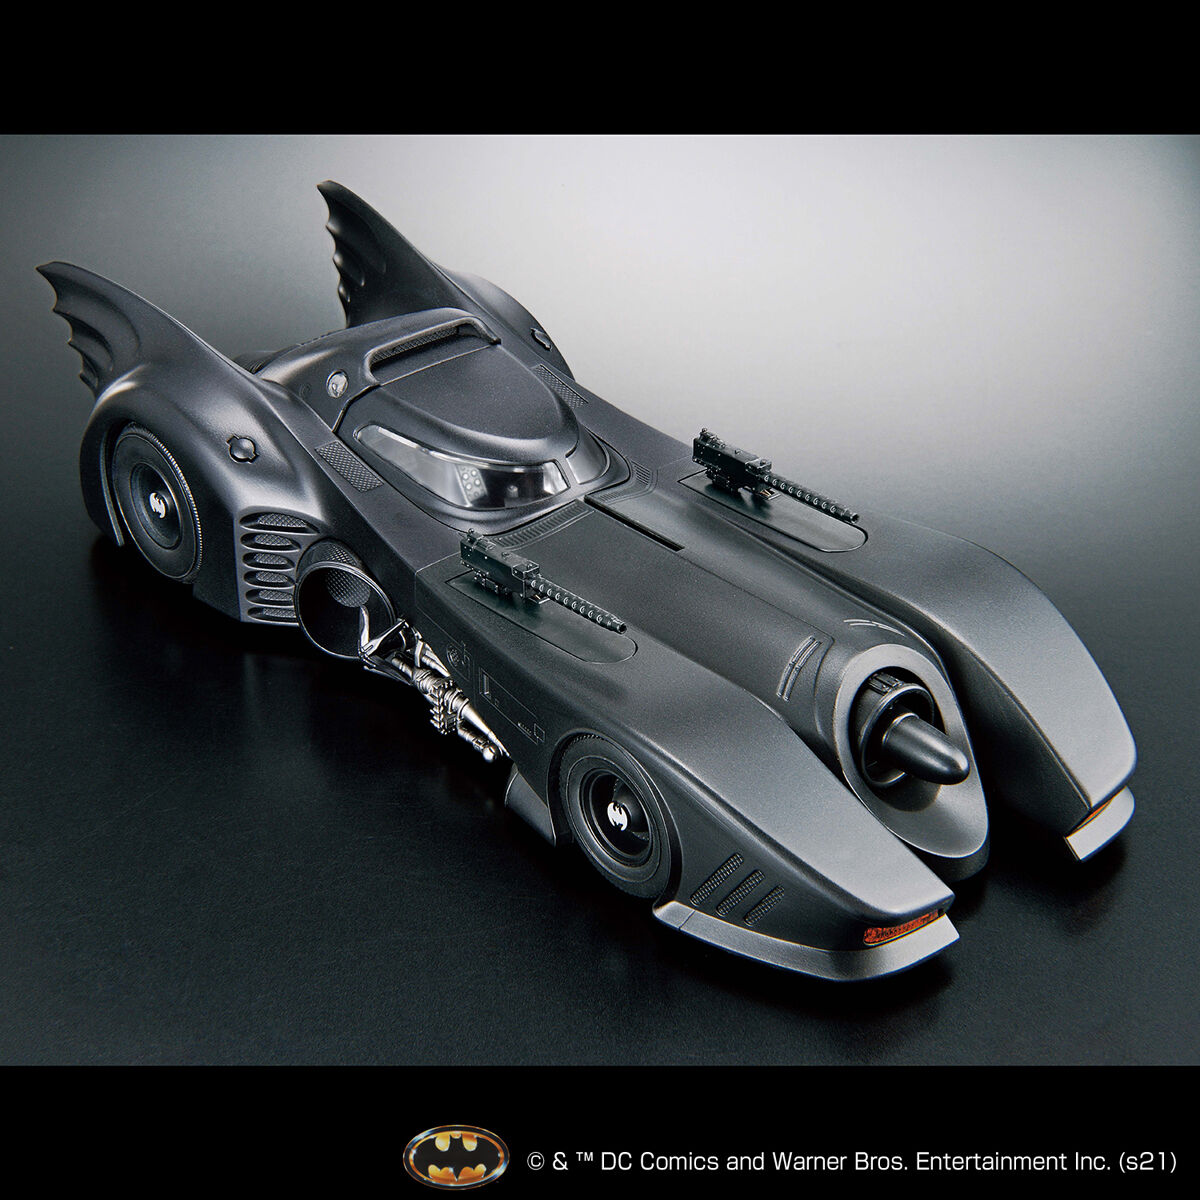 LEGO Batman 1989 Batmobile Set - The Toyark - News